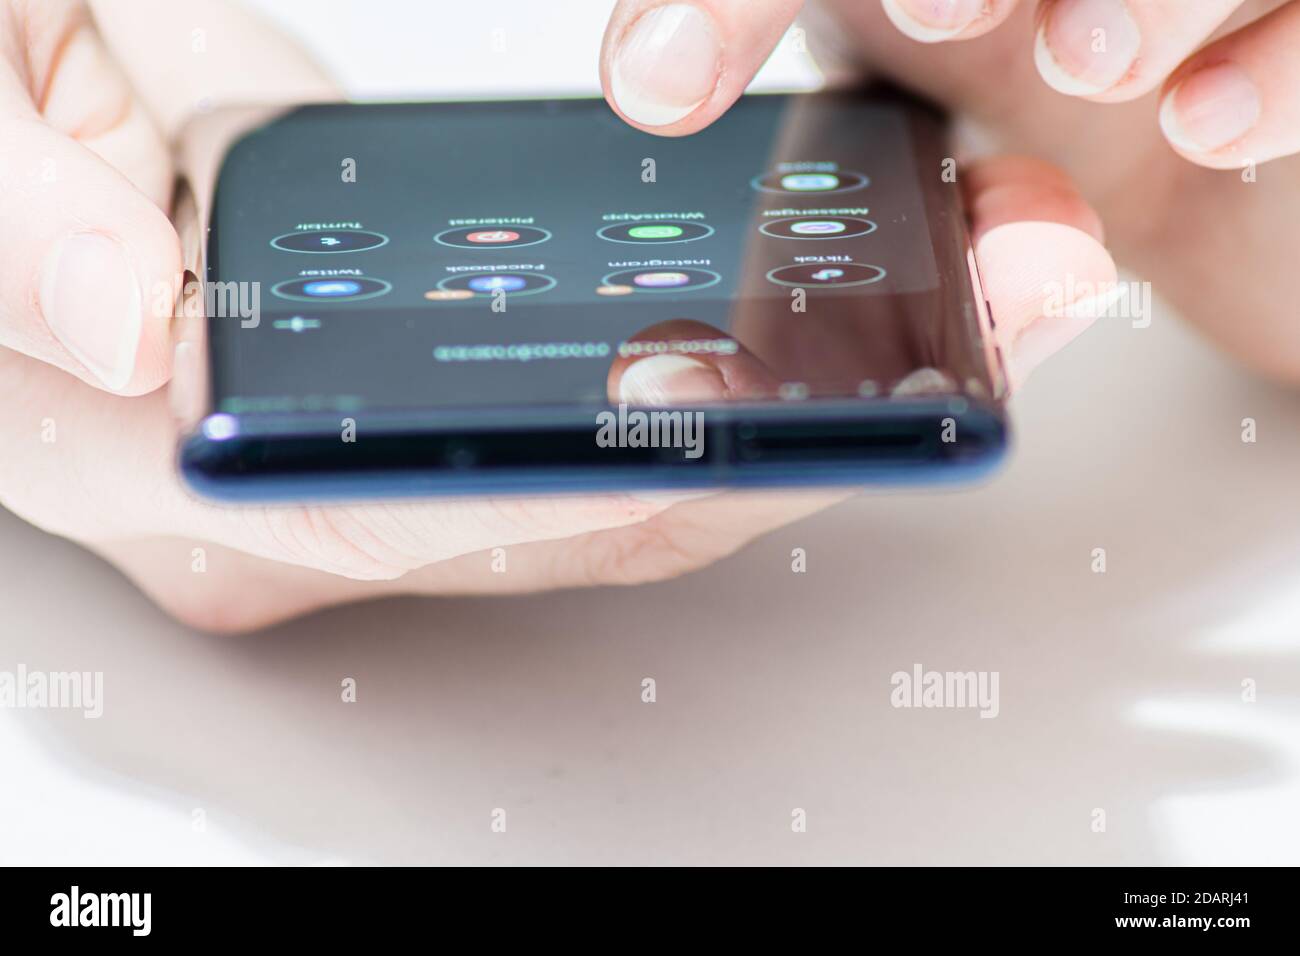 Vienne / Autriche / 14 novembre 2020 : perspective frontale du smartphone avec des applications android tenues dans la main d'une femme Banque D'Images